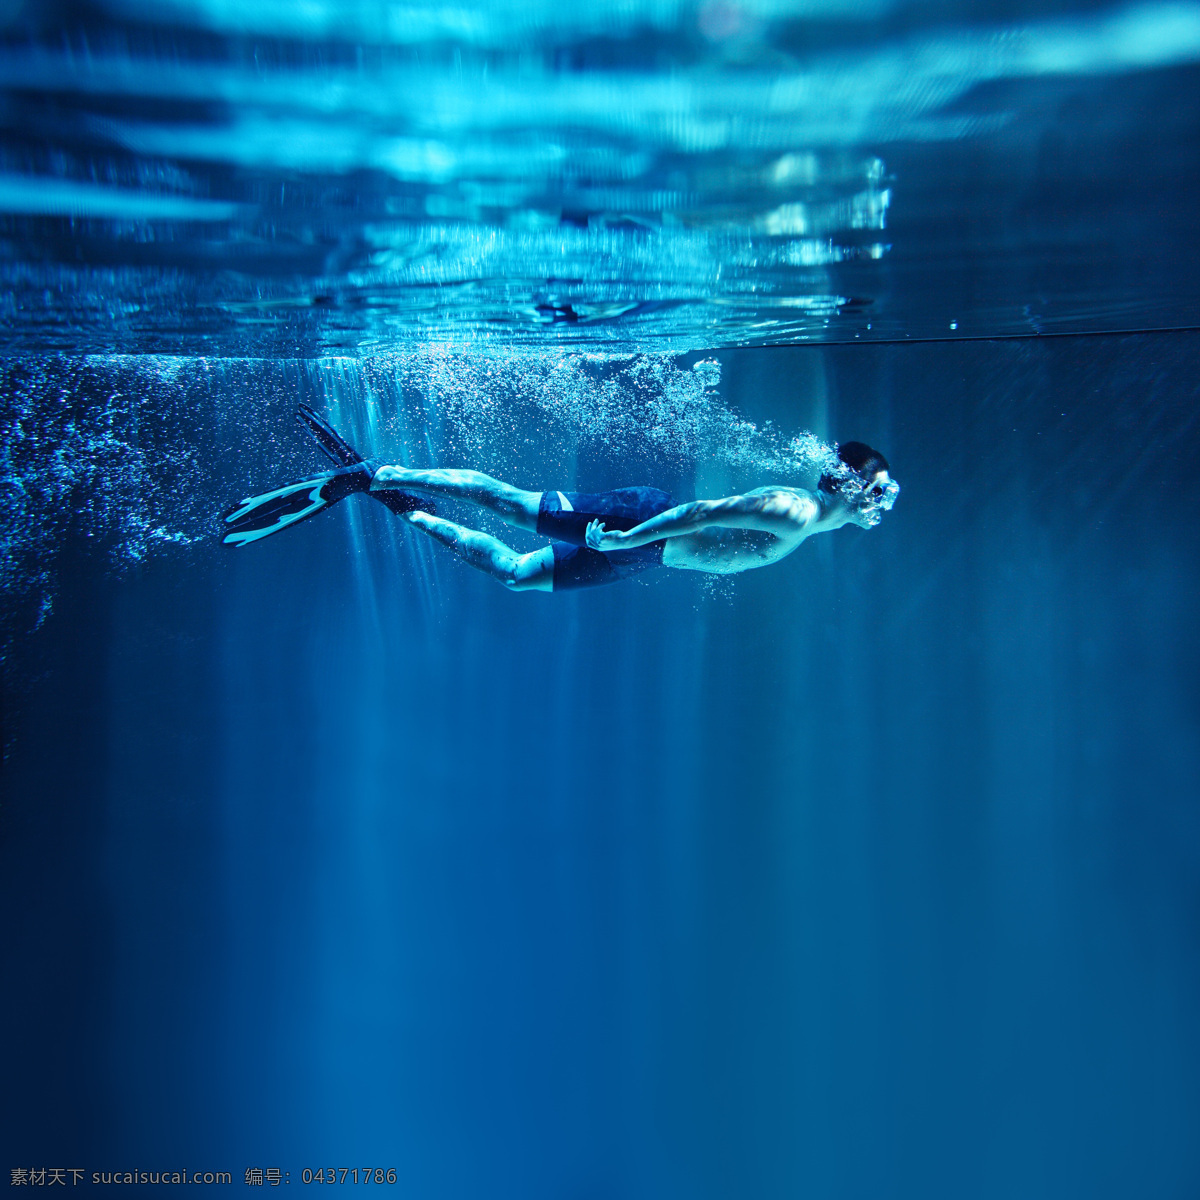 潜水 游泳 运动员 男子 体育运动员 体育运动 体育运动项目 生活百科